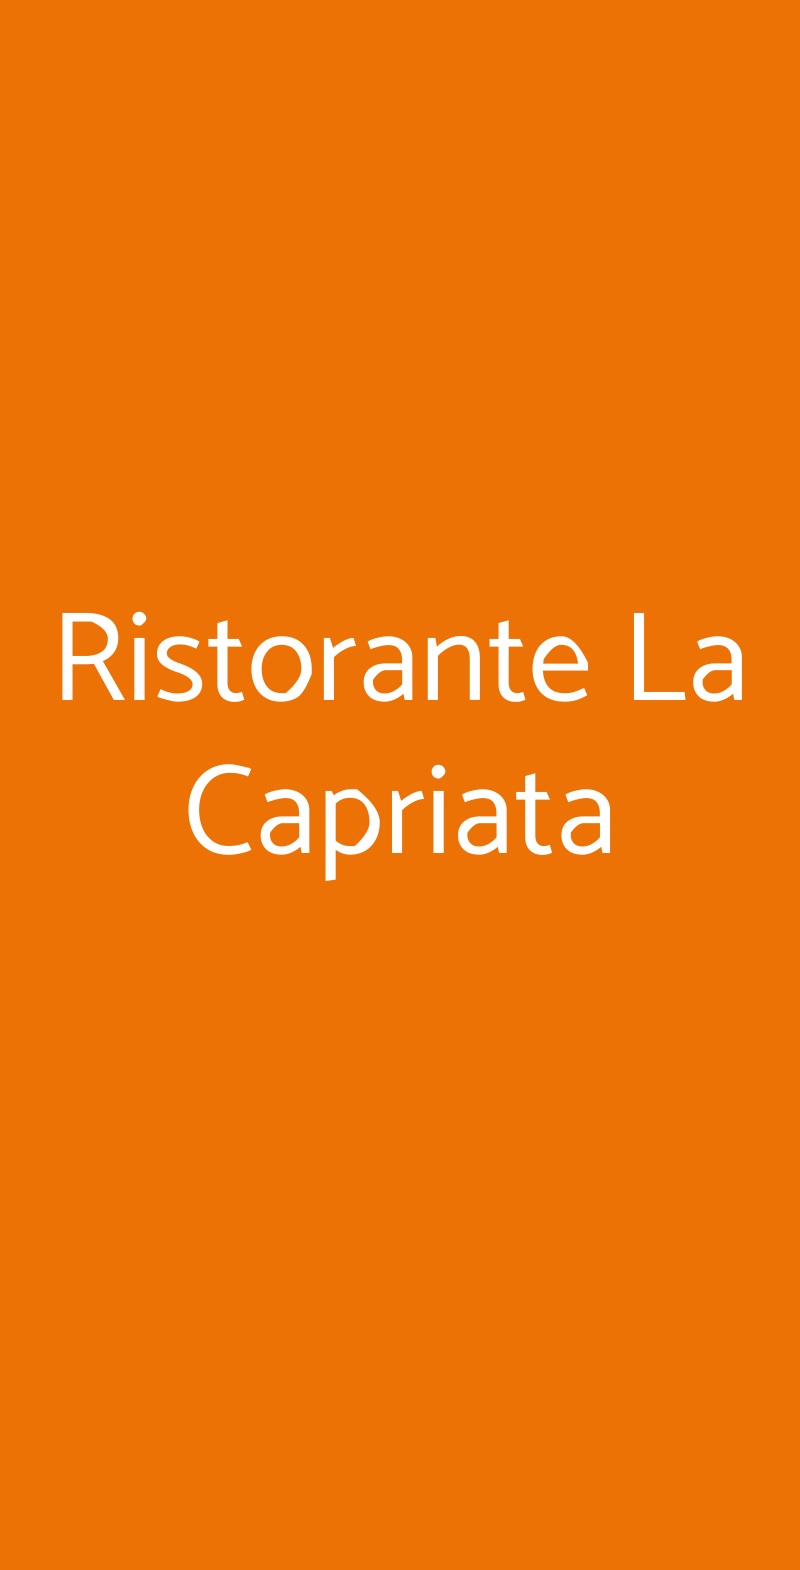 Ristorante La Capriata Bologna menù 1 pagina